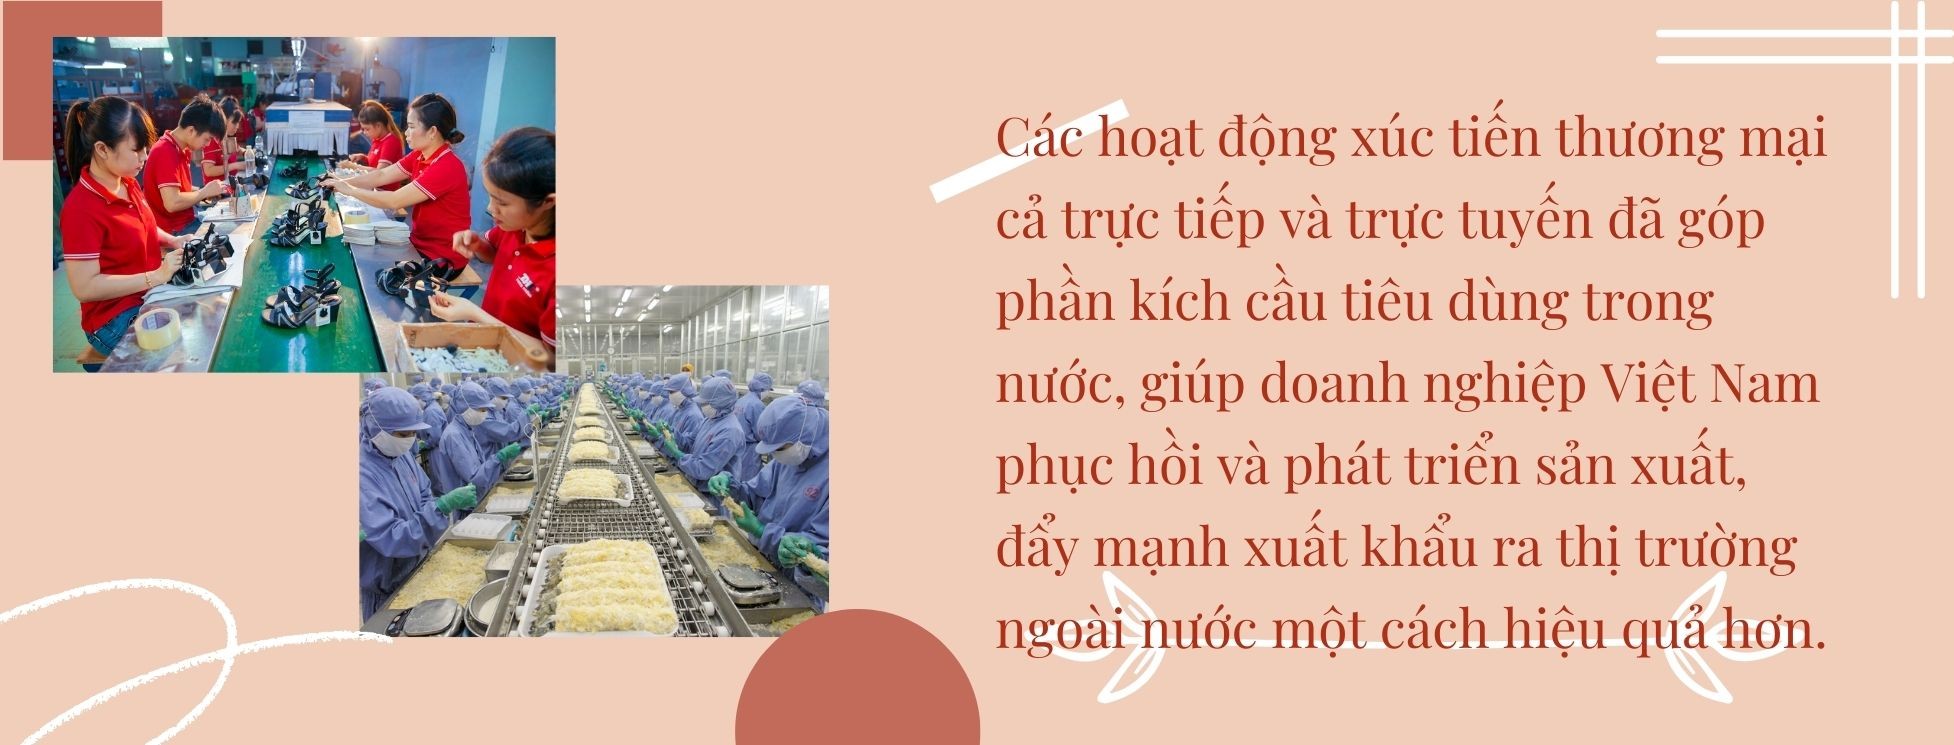 Longform | Xúc tiến thương mại: Cầu nối hiệu quả đưa hàng Việt ra thị trường thế giới